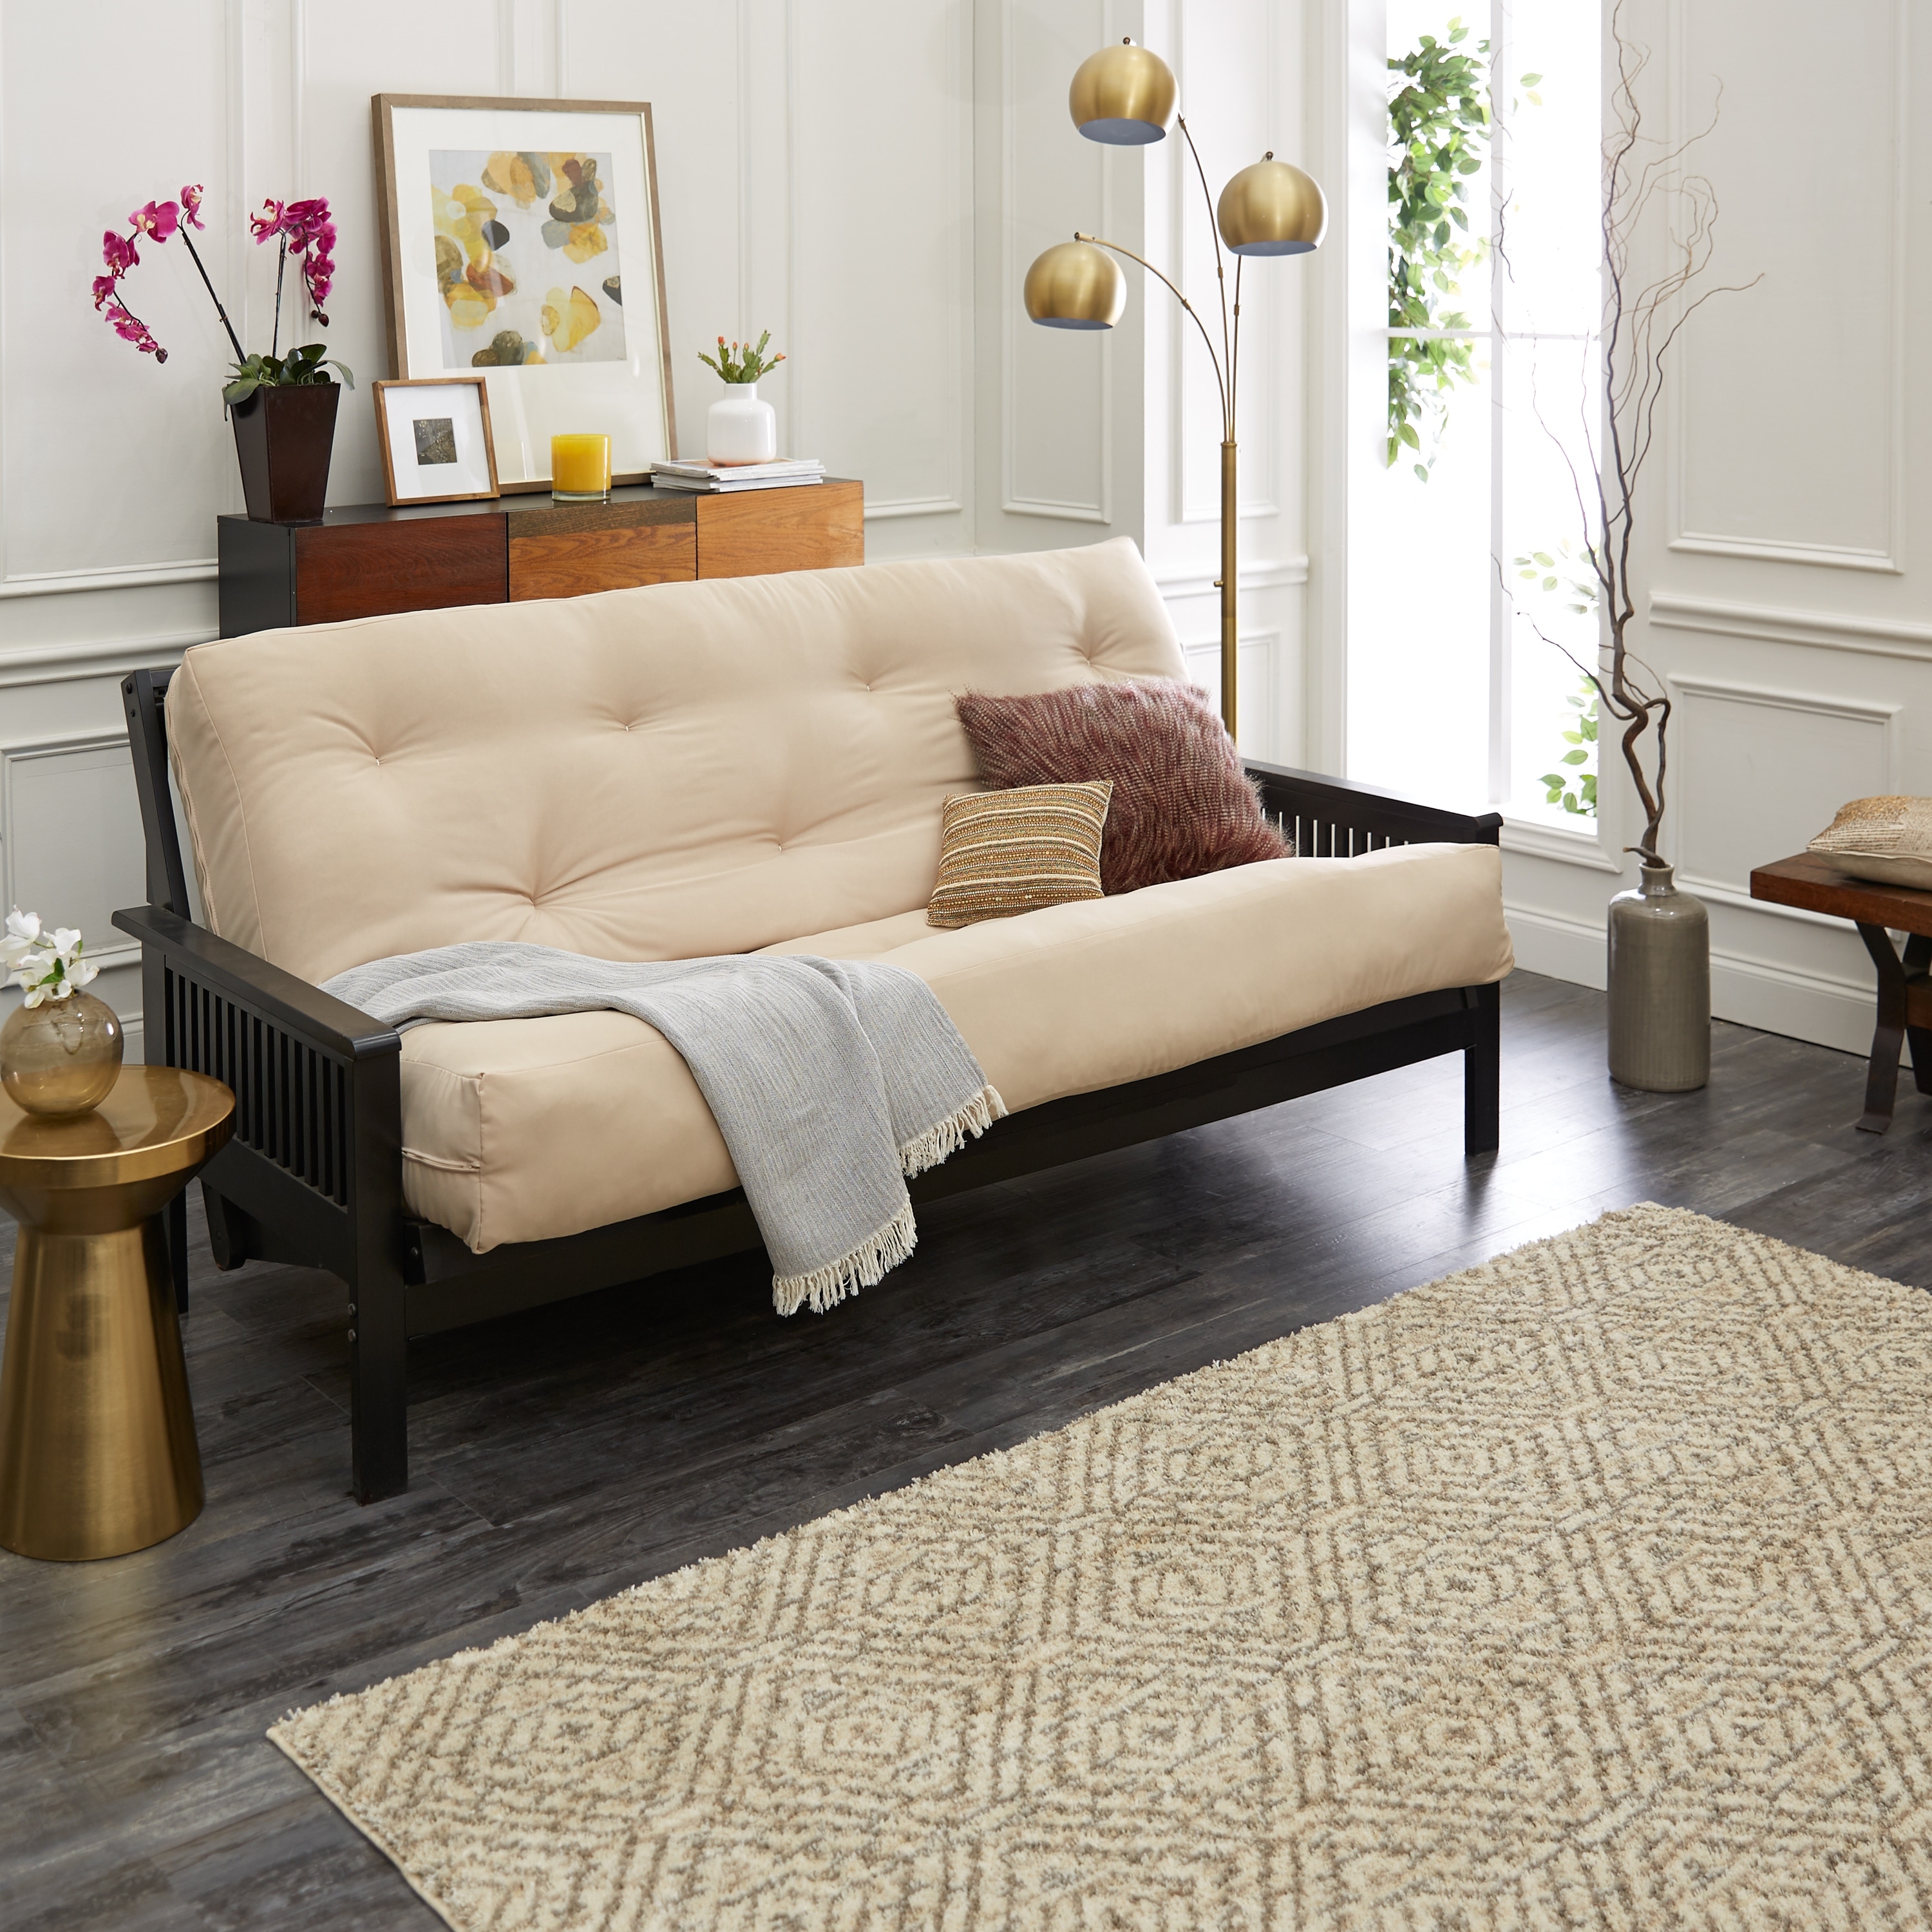 Buy Queen Size Futons Online Overstock Our Best Living Room Furniture Deals